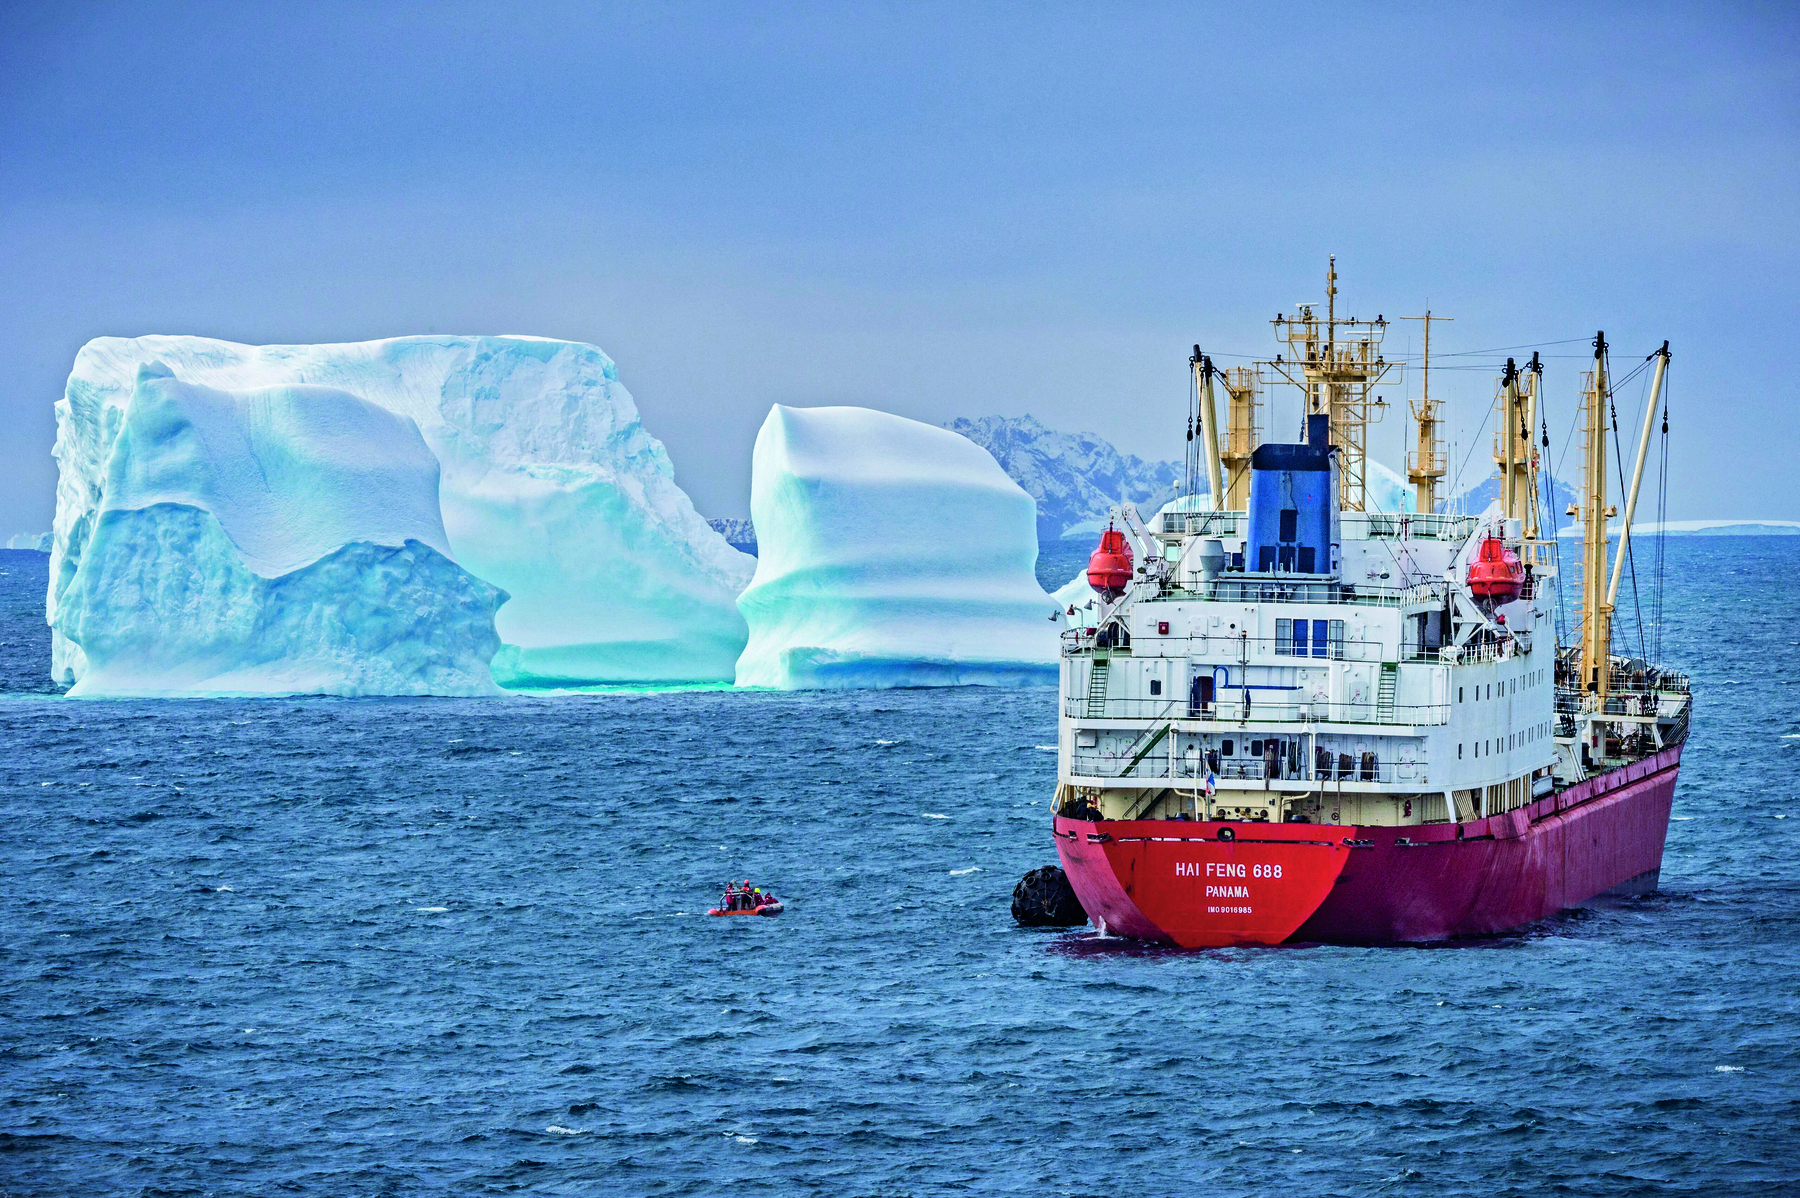 Fotografia. Navio de pesca navegando pelo mar da Antártida. Ele está localizado do lado direito da fotografia. O casco do navio é vermelho. A ponte de comando e as demais instalações são brancas. Ao lado do navio, no mar, há um bote com duas pessoas. Ao fundo da fotografia, lado esquerdo, há icebergs.